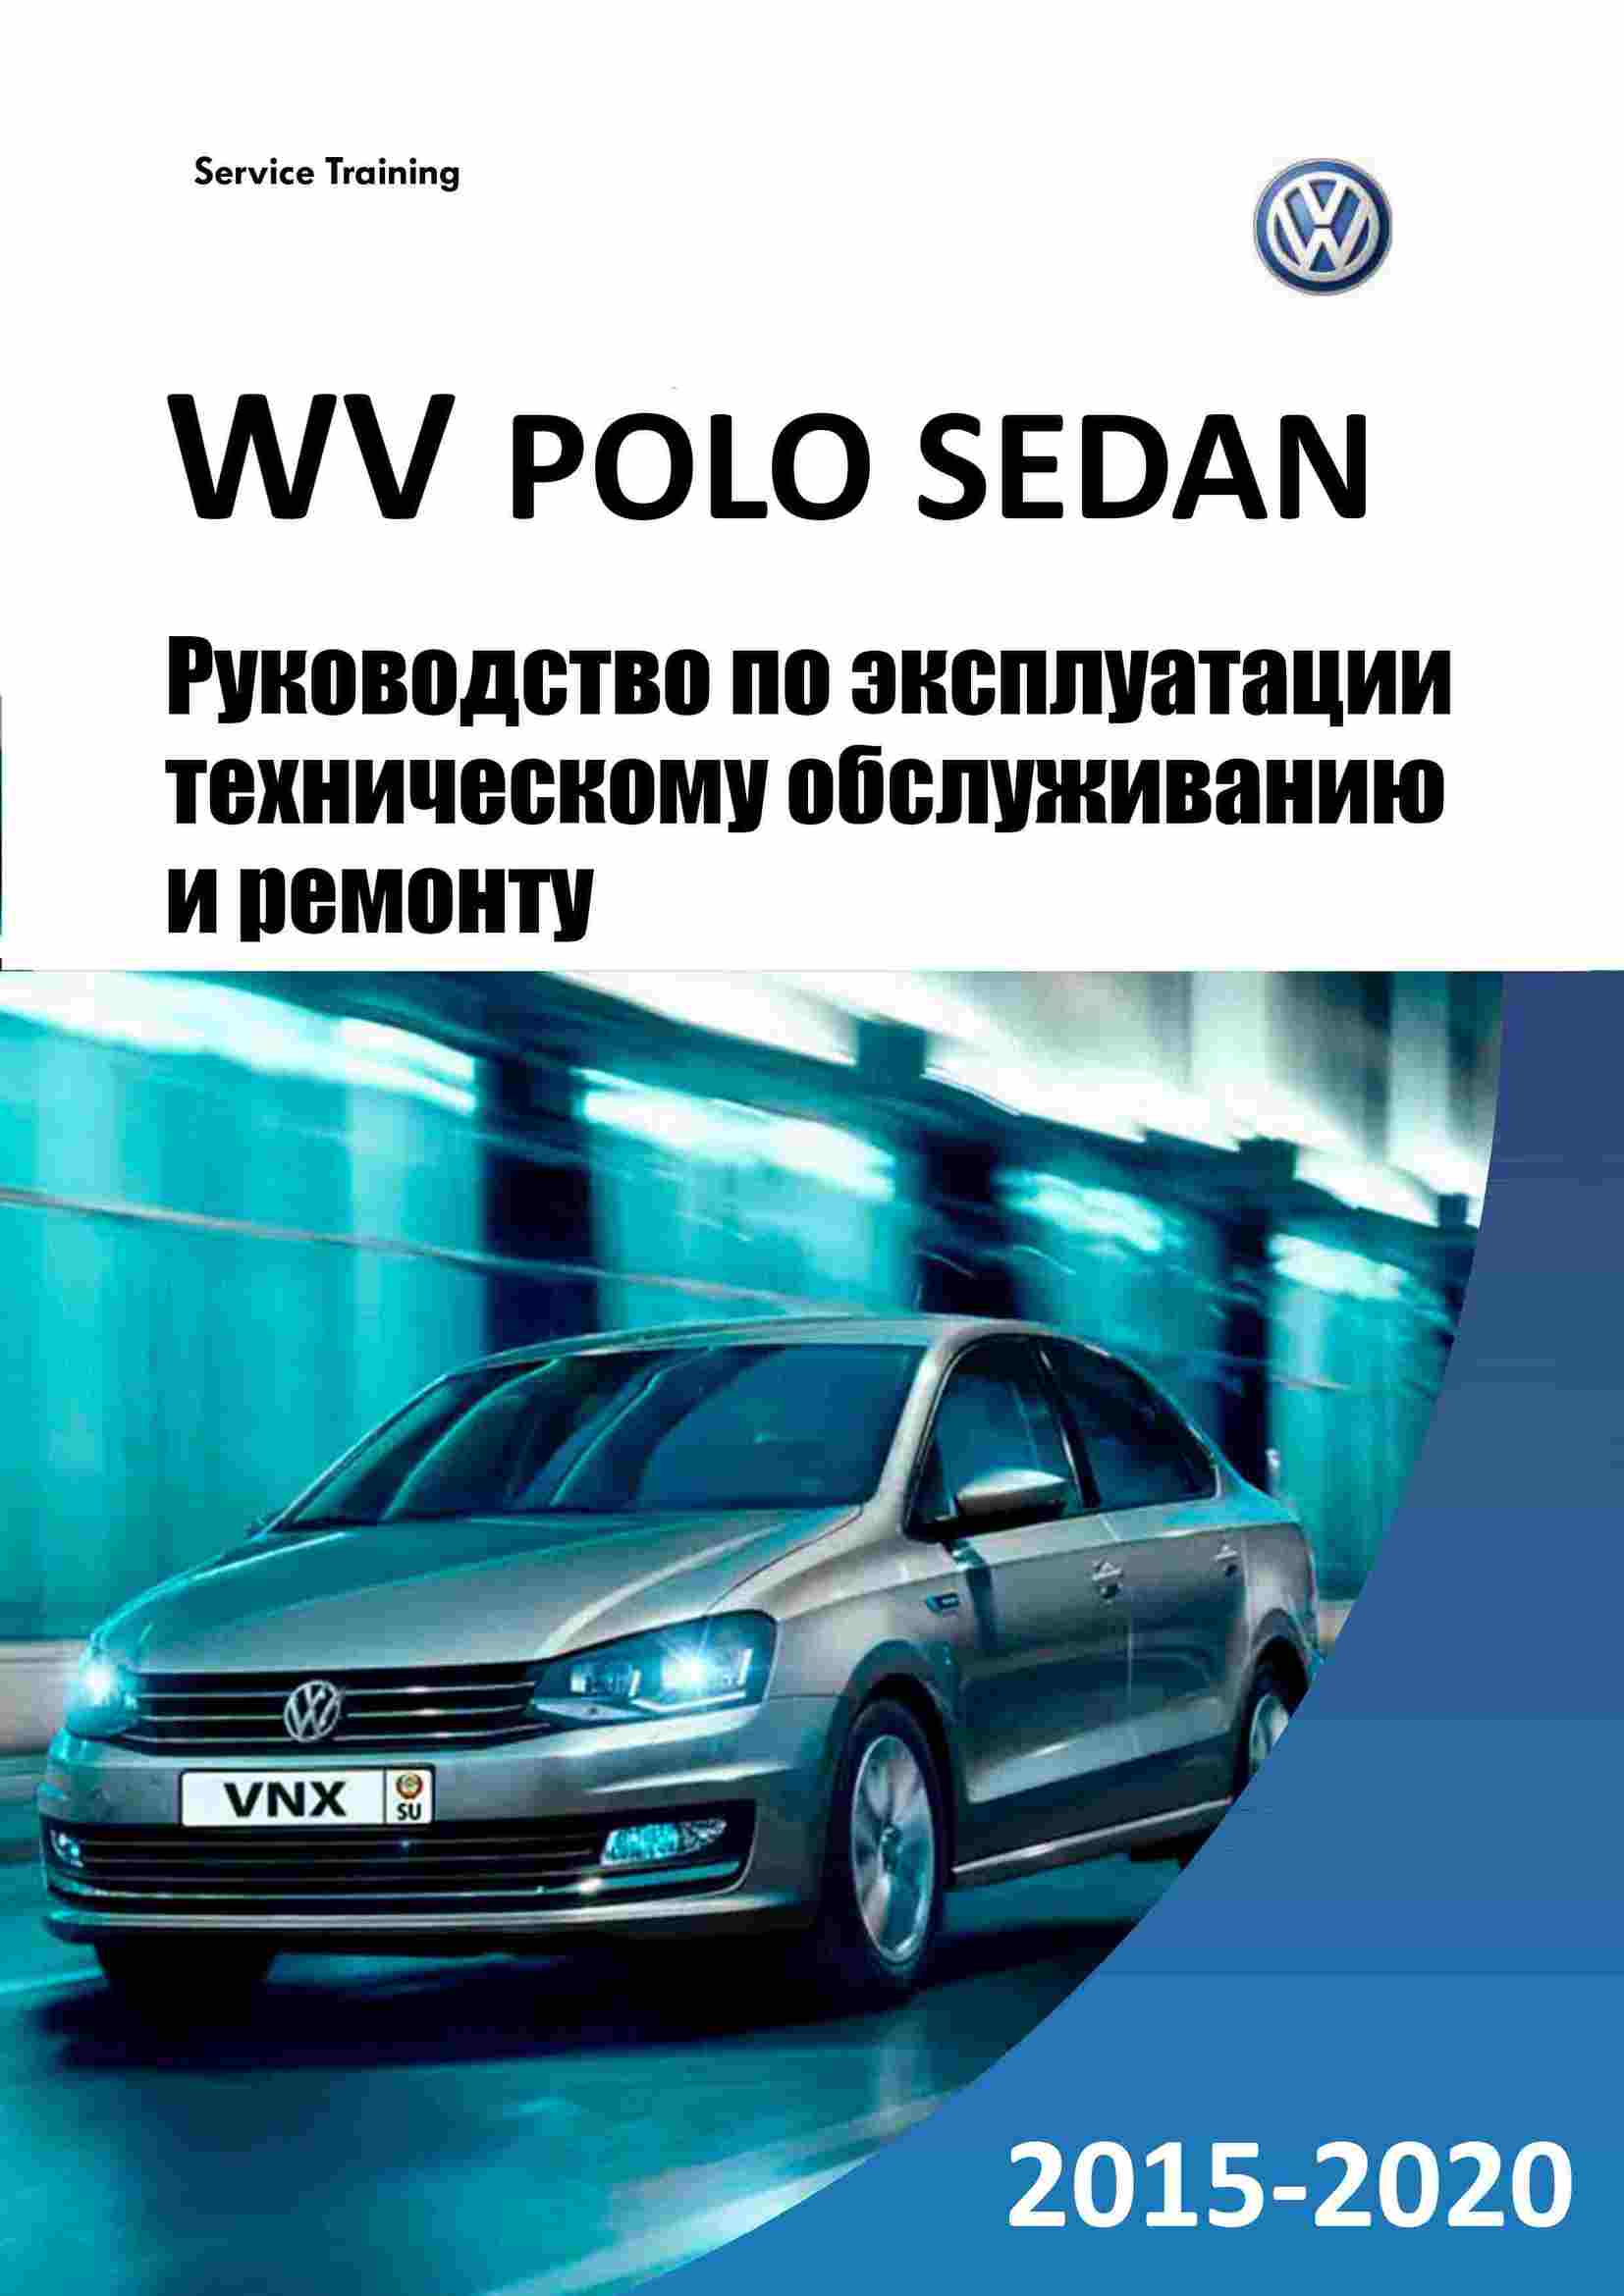 Volkswagen polo. руководство по эксплуатации. общие сведения, габаритные размеры и технические характеристики, паспортные данные volkswagen polo c 2010 года выпуска.